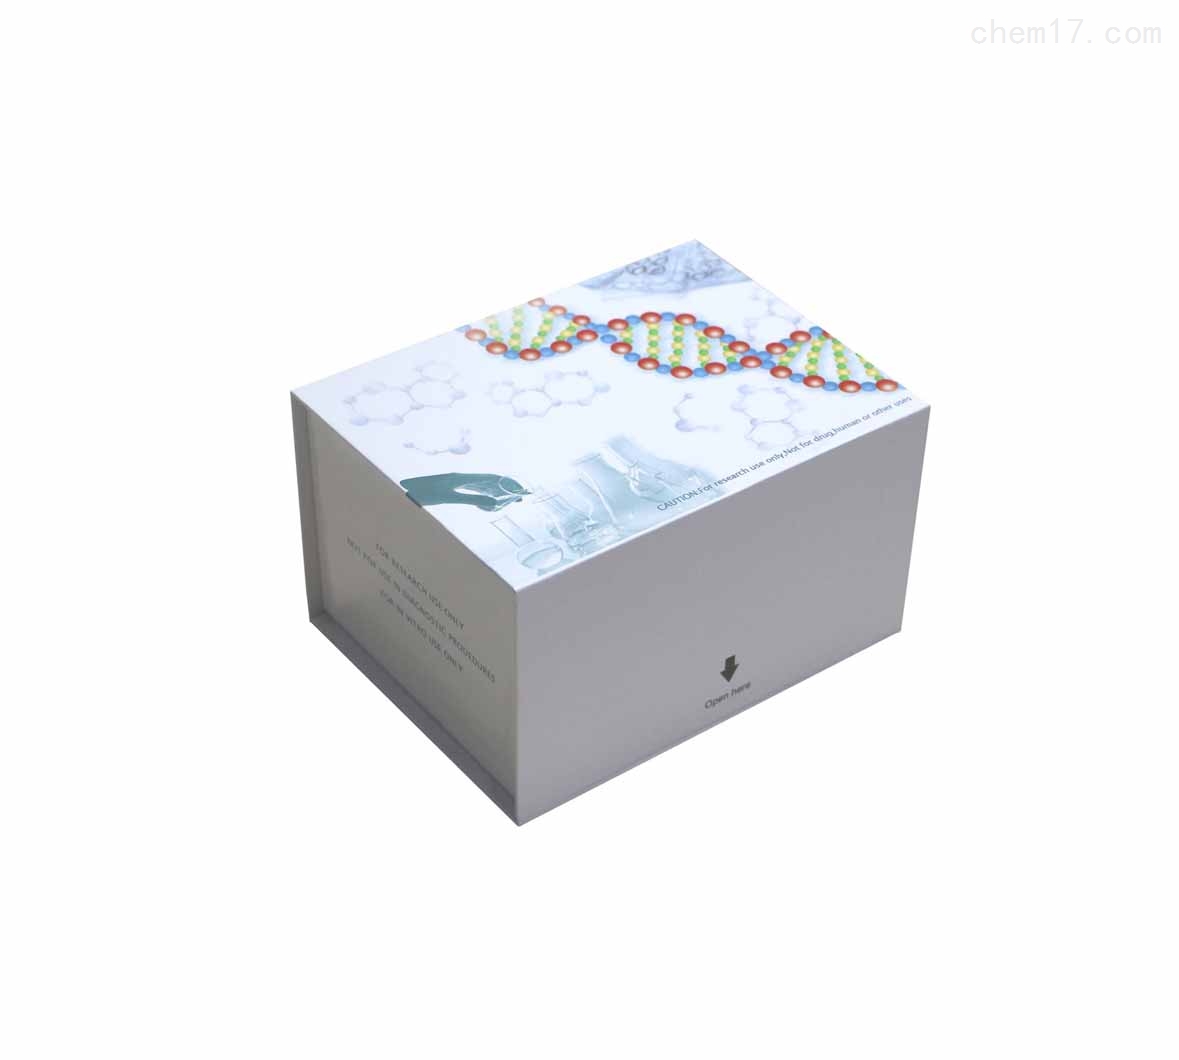 微生物三磷酸腺苷(ATP)ELISA试剂盒现货说明书